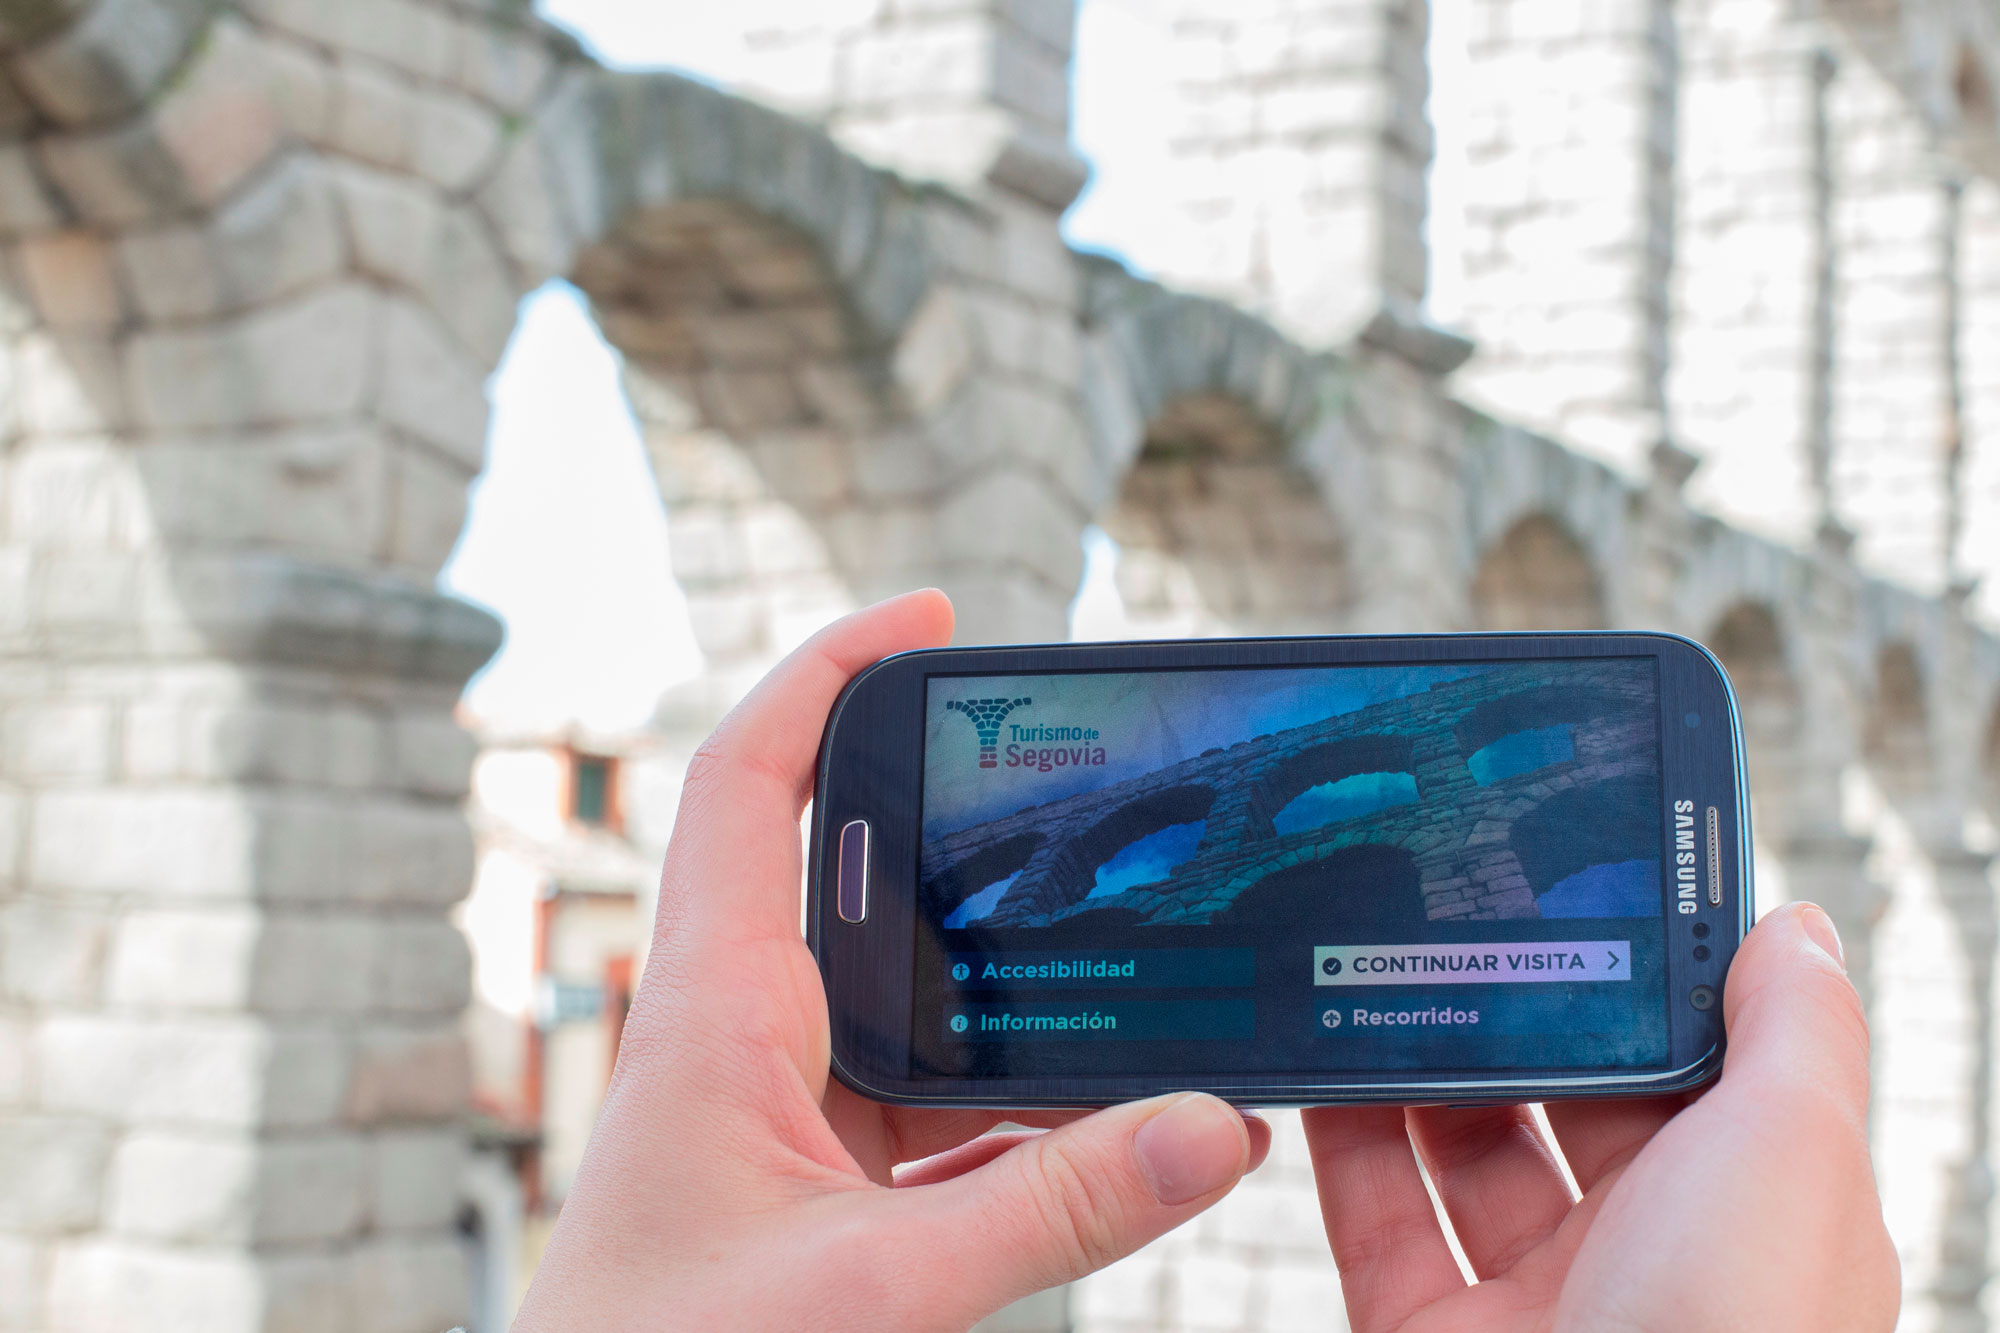 Turista usa la app Segovia junto al acueducto